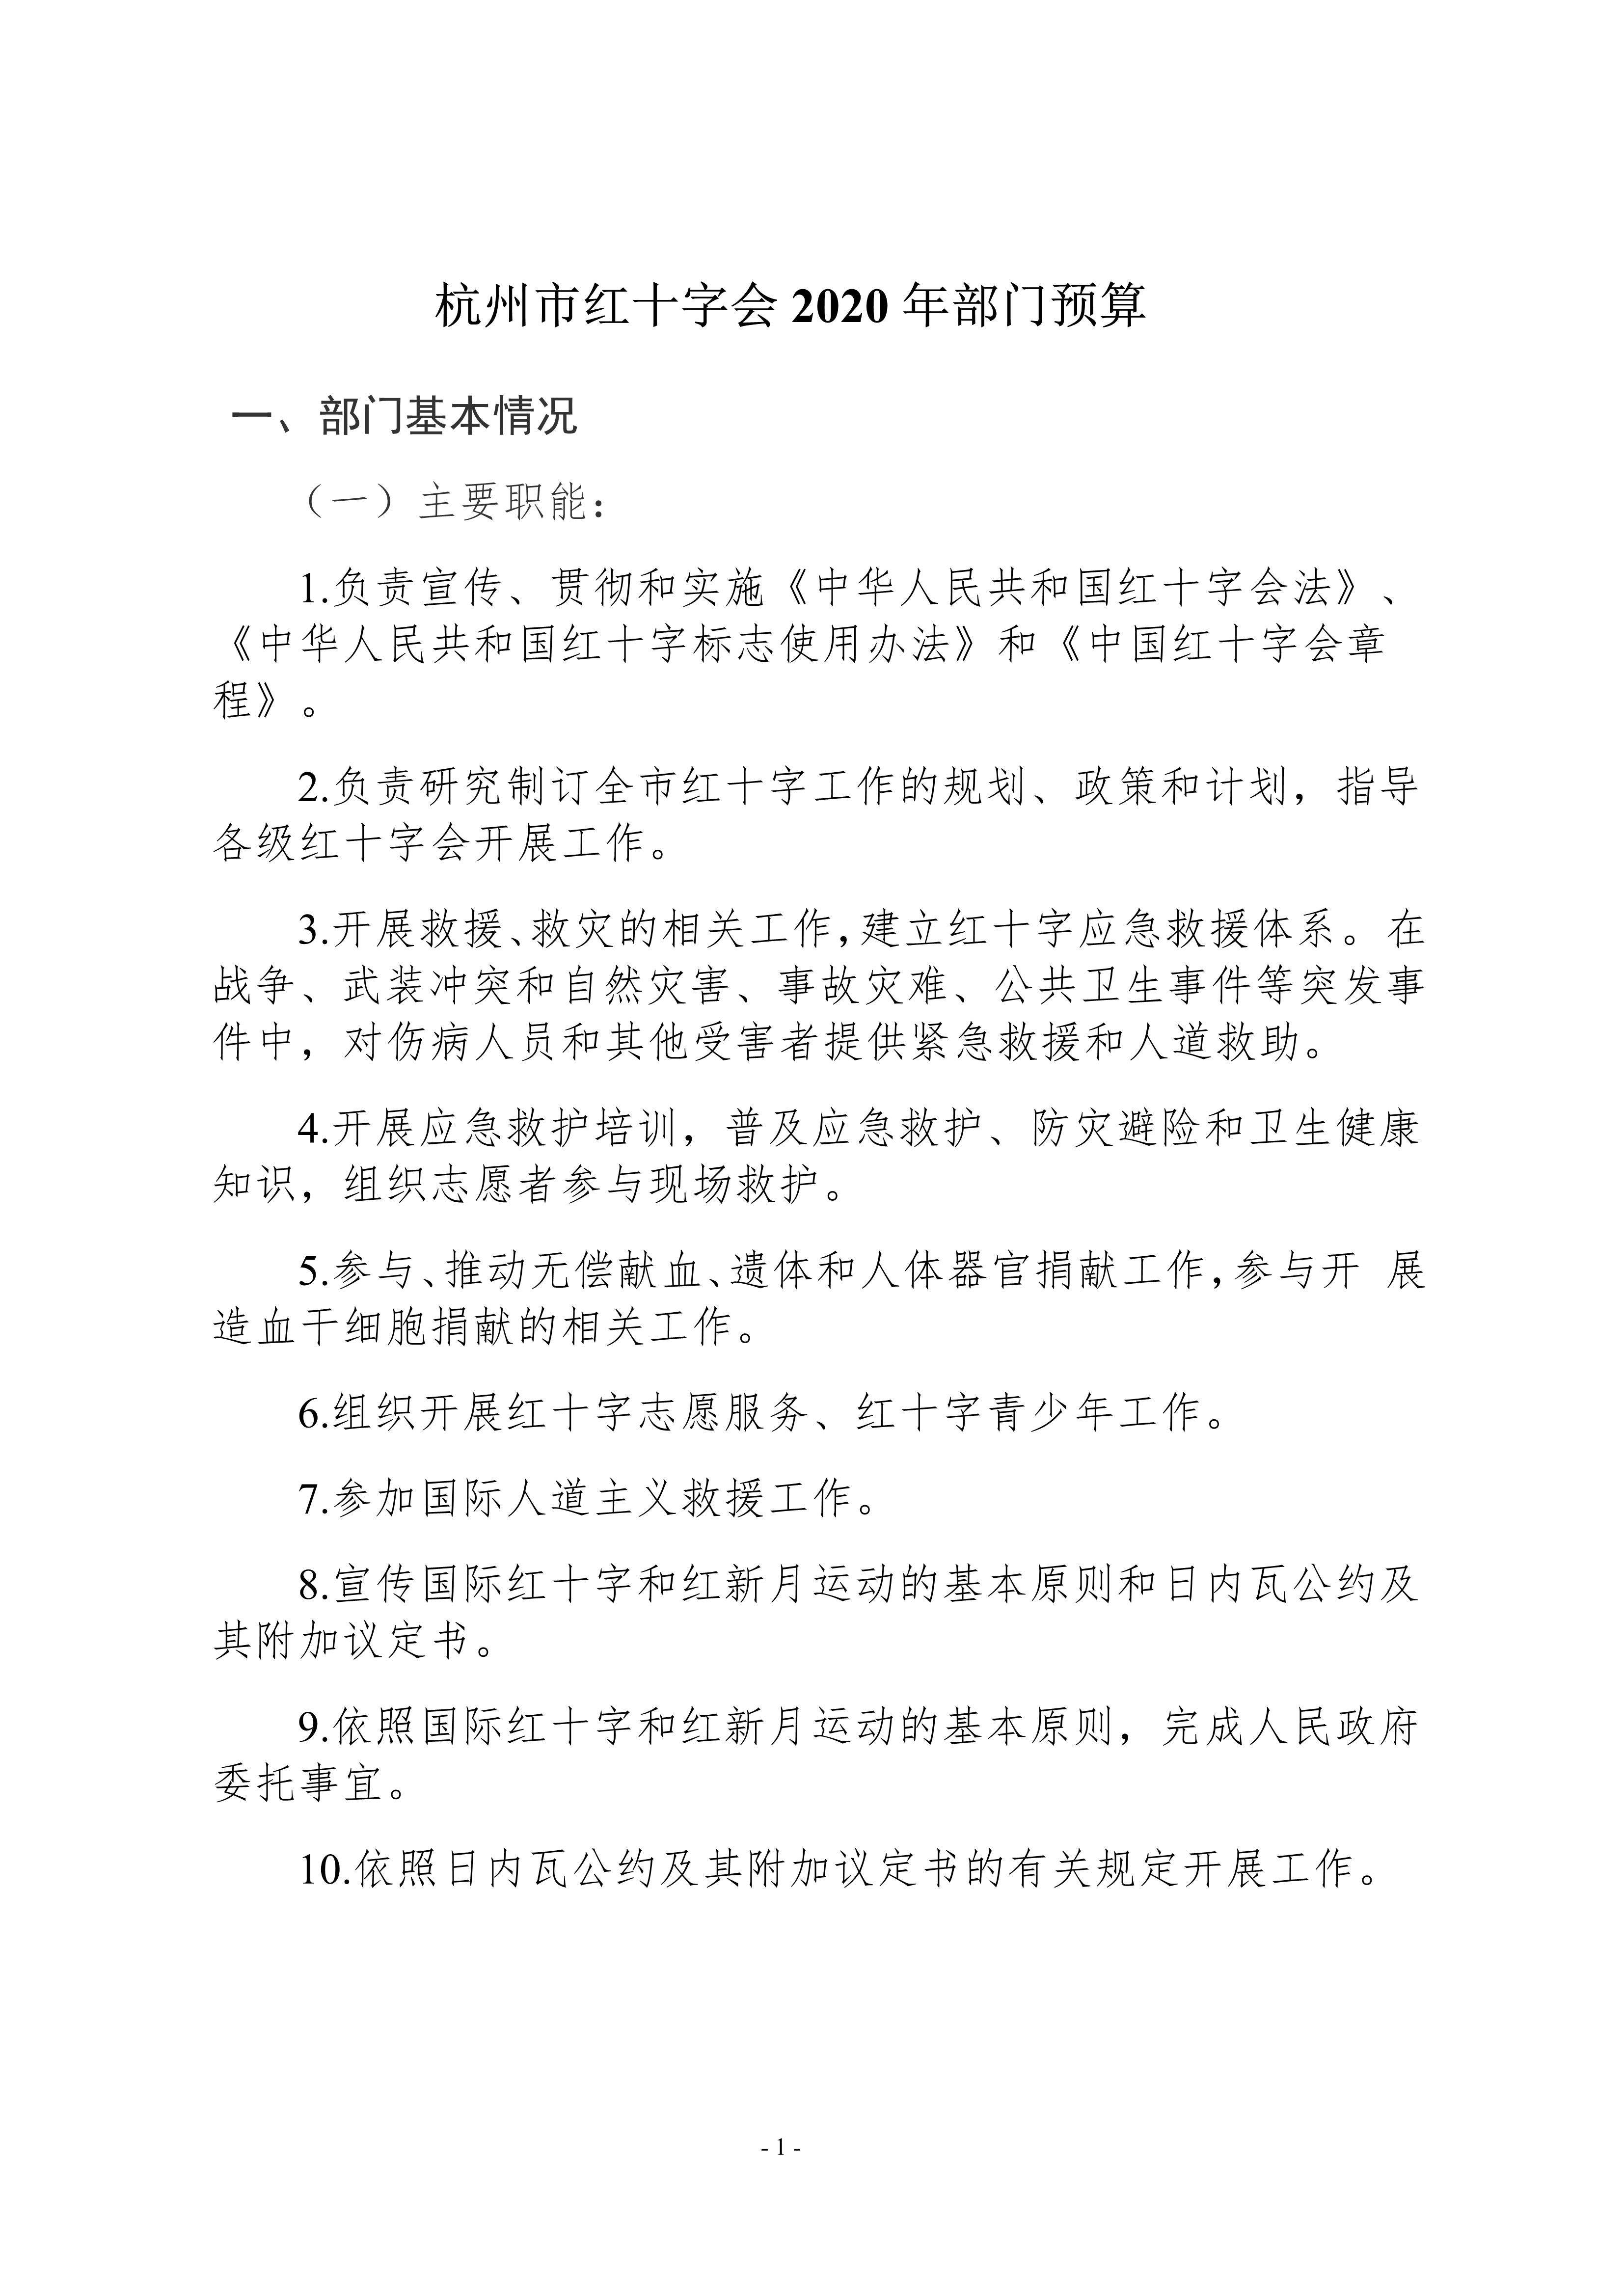 052010174206_0杭州市红十字会2020年部门预算_1.jpg